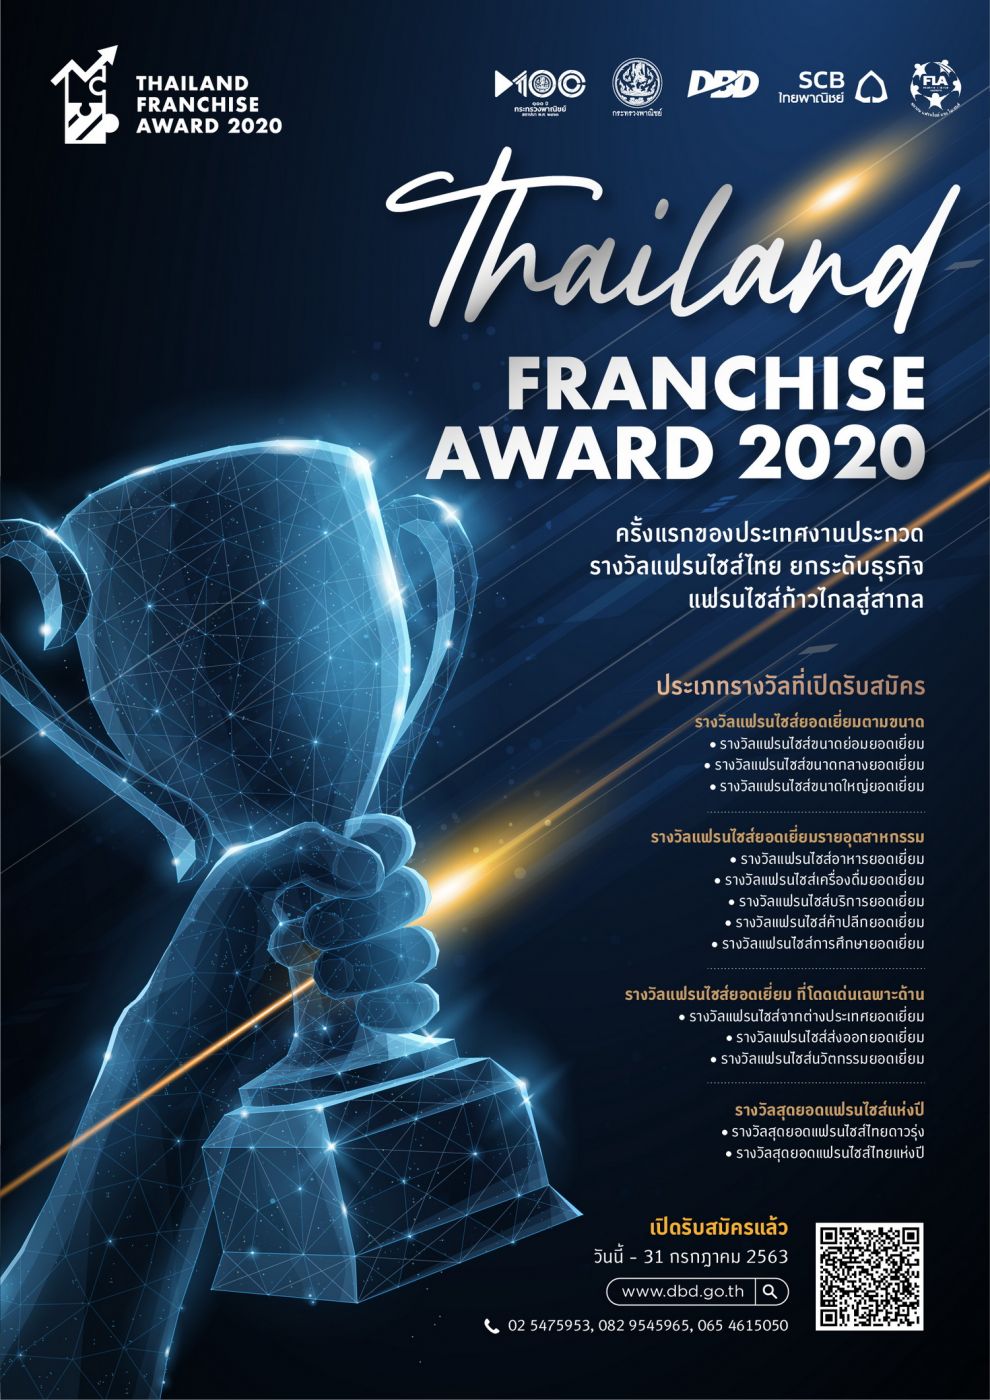 กรมพัฒนาธุรกิจการค้า เปิดรับสมัครผู้ประกอบการสมัครโครงการประกวดรางวัลแฟรนไชส์ไทย  “Thailand Franchise Award 2020”